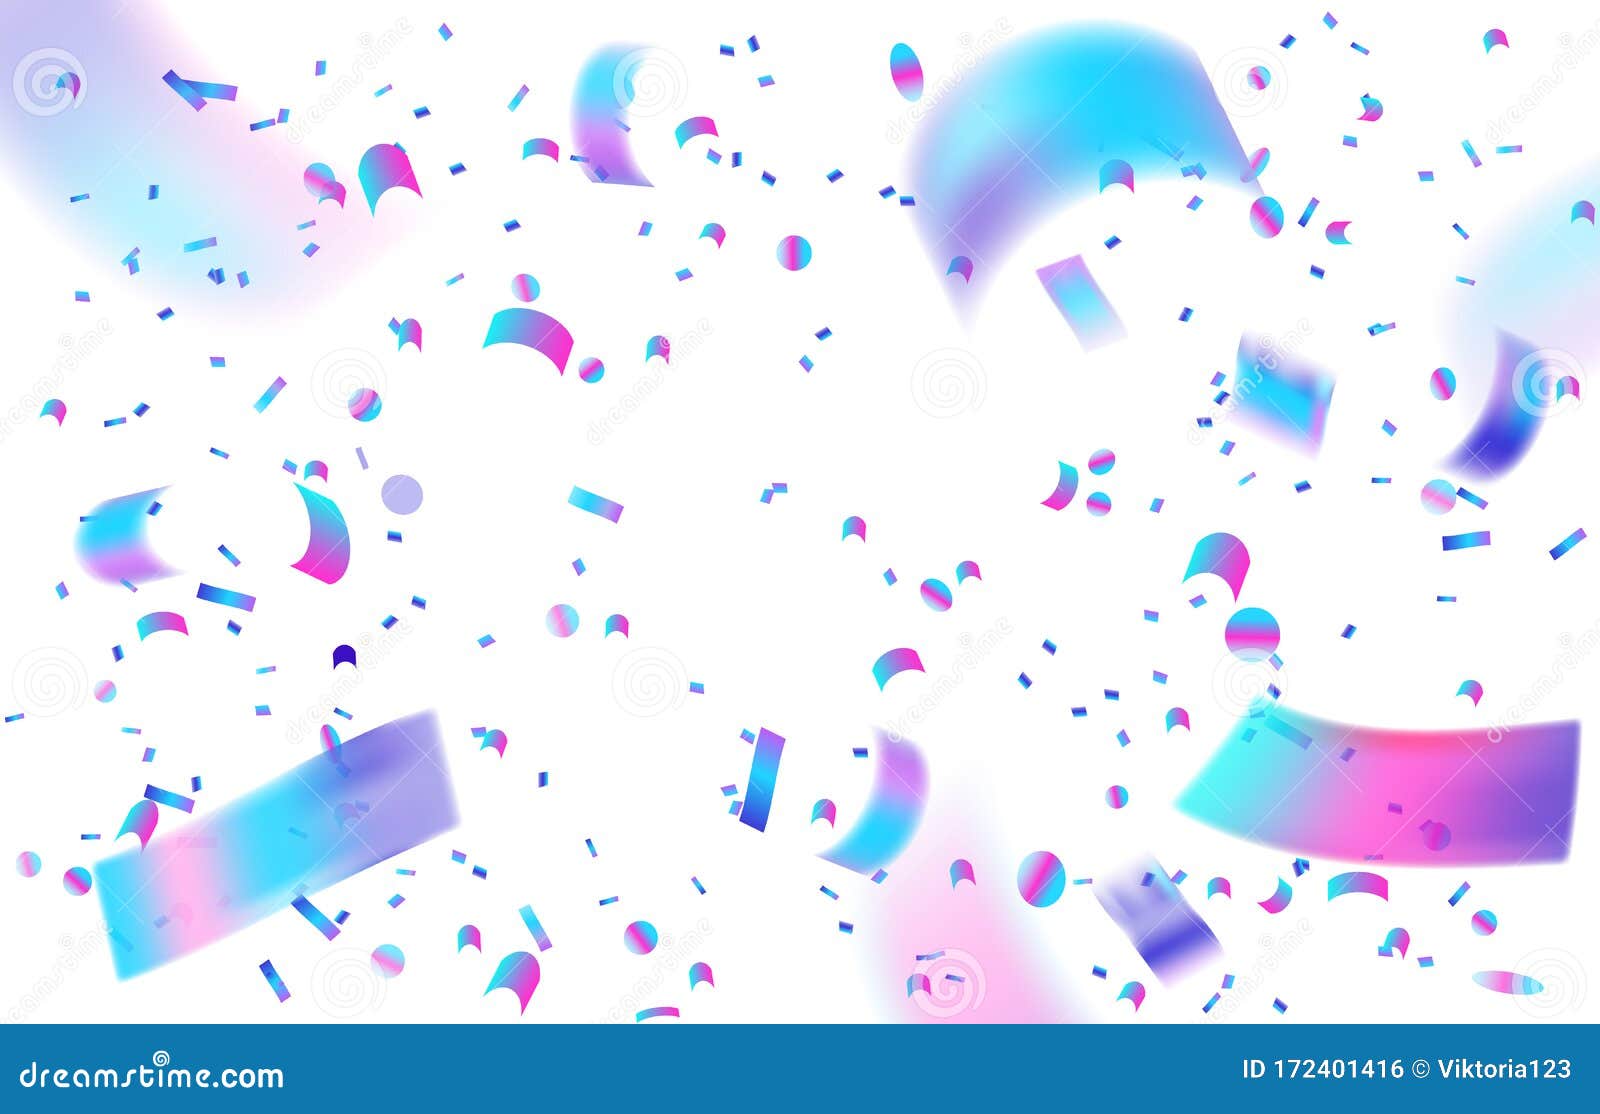 白色背景中的全息纸屑霓虹色的节日模板 用于派对插图 惊喜和礼物向量例证 插画包括有要素 例证